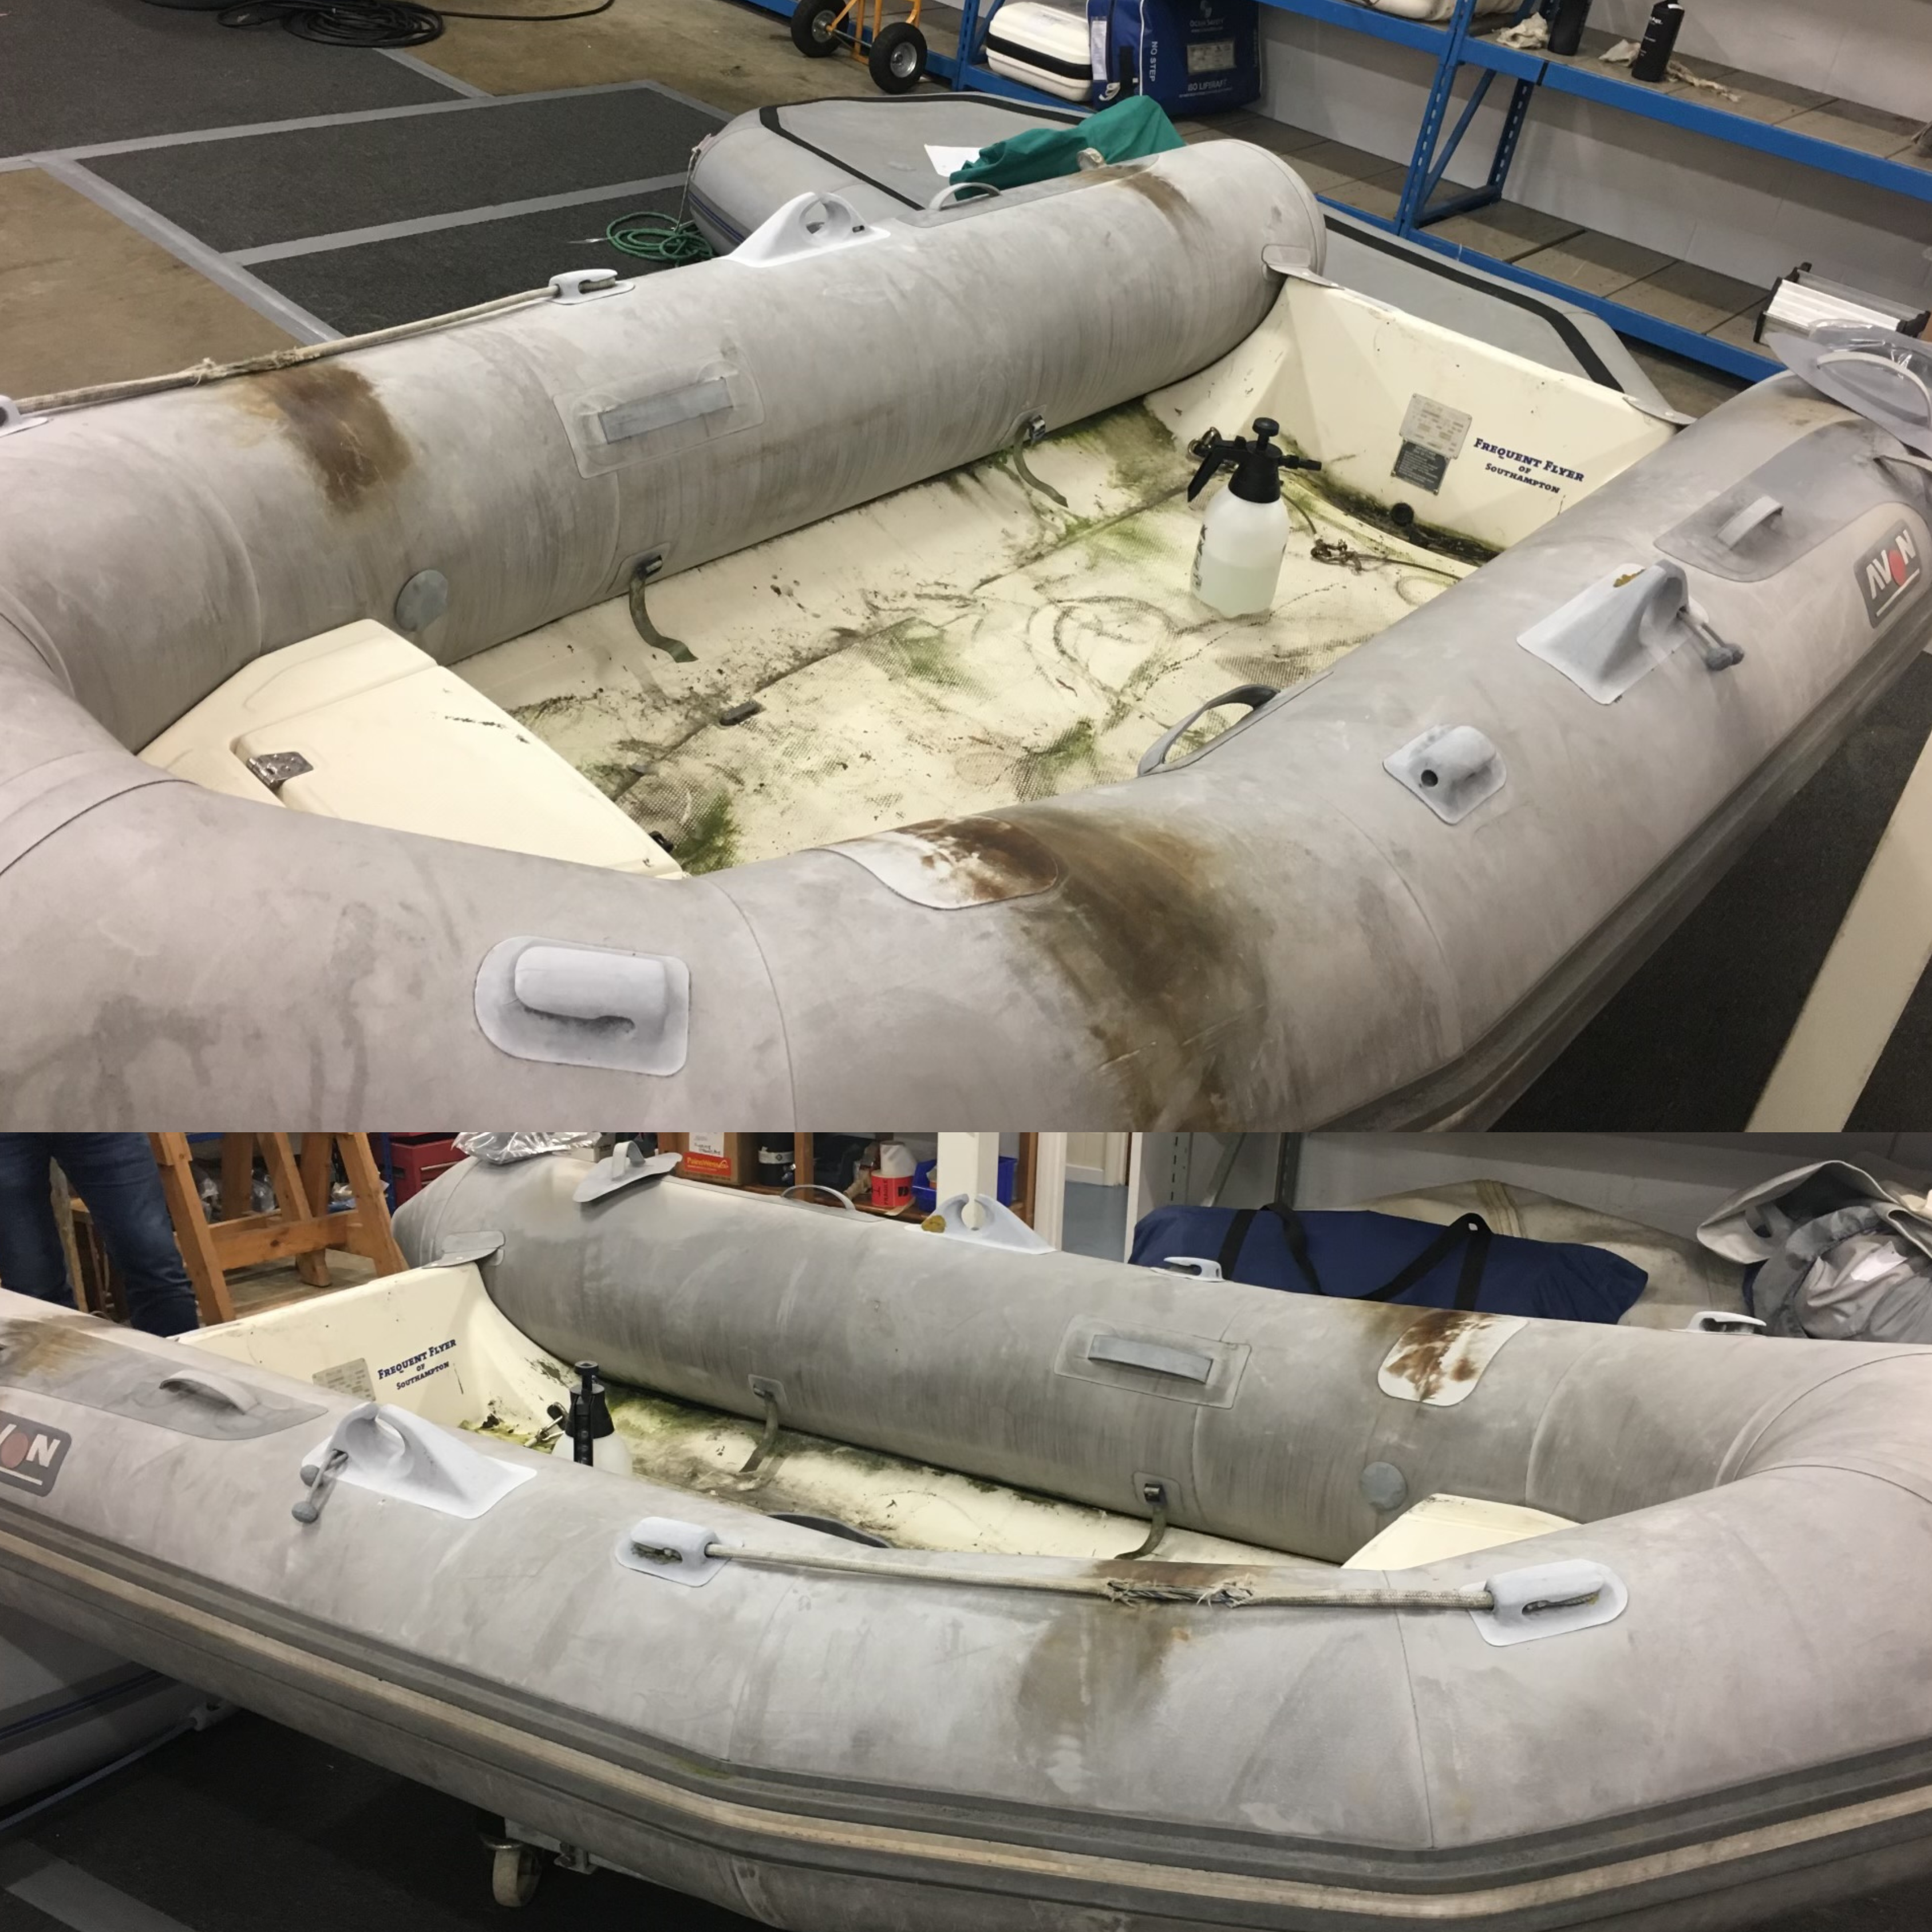 Inflatable Boat Repairs